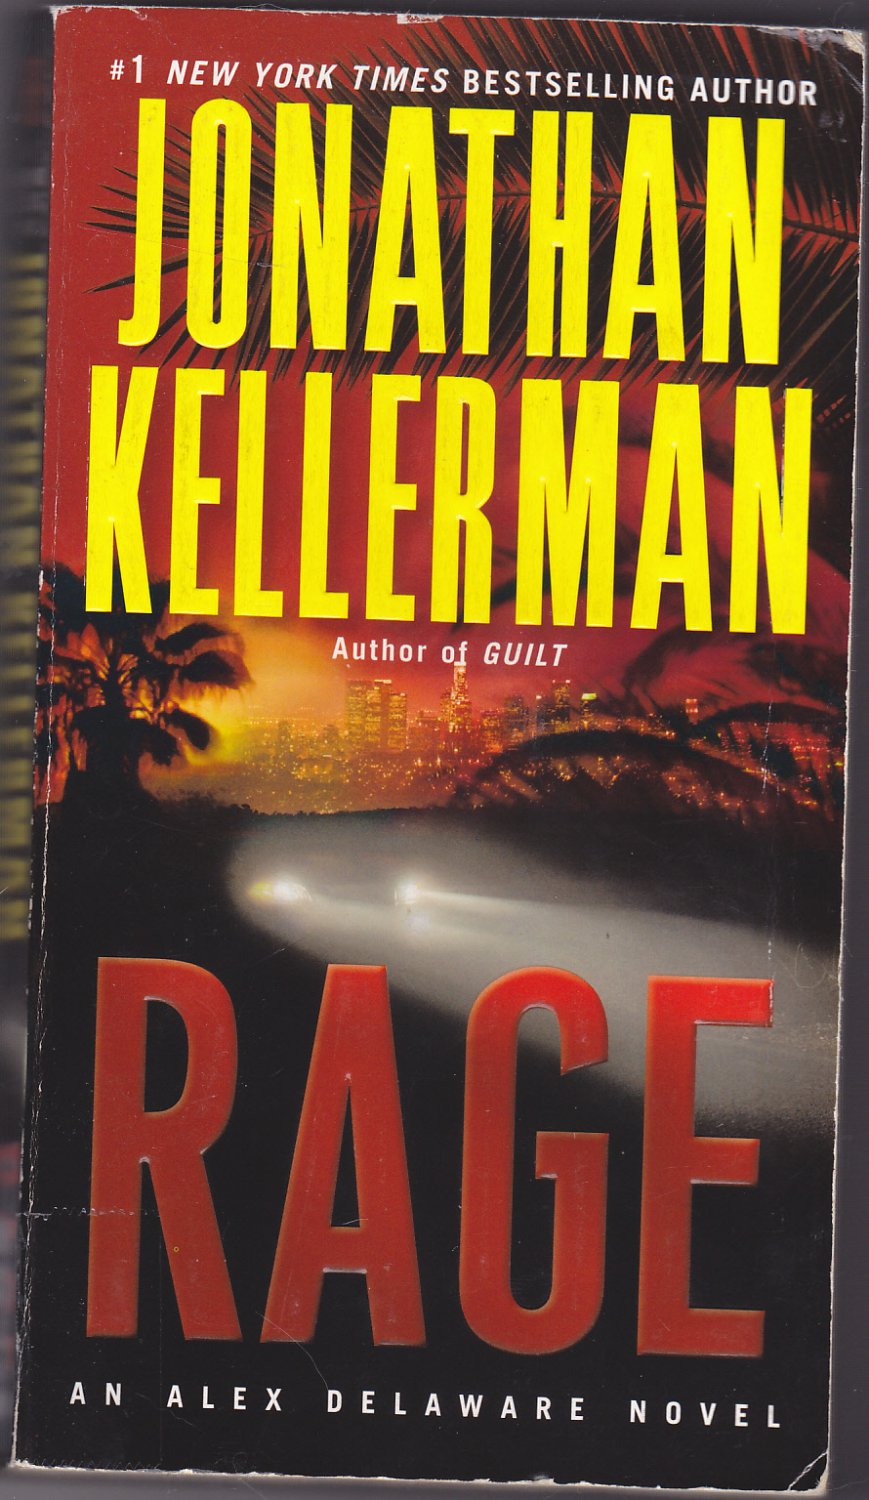 Rage - (Delaware) by Jonathan Kellerman 2013 Paperback Book - Very Good